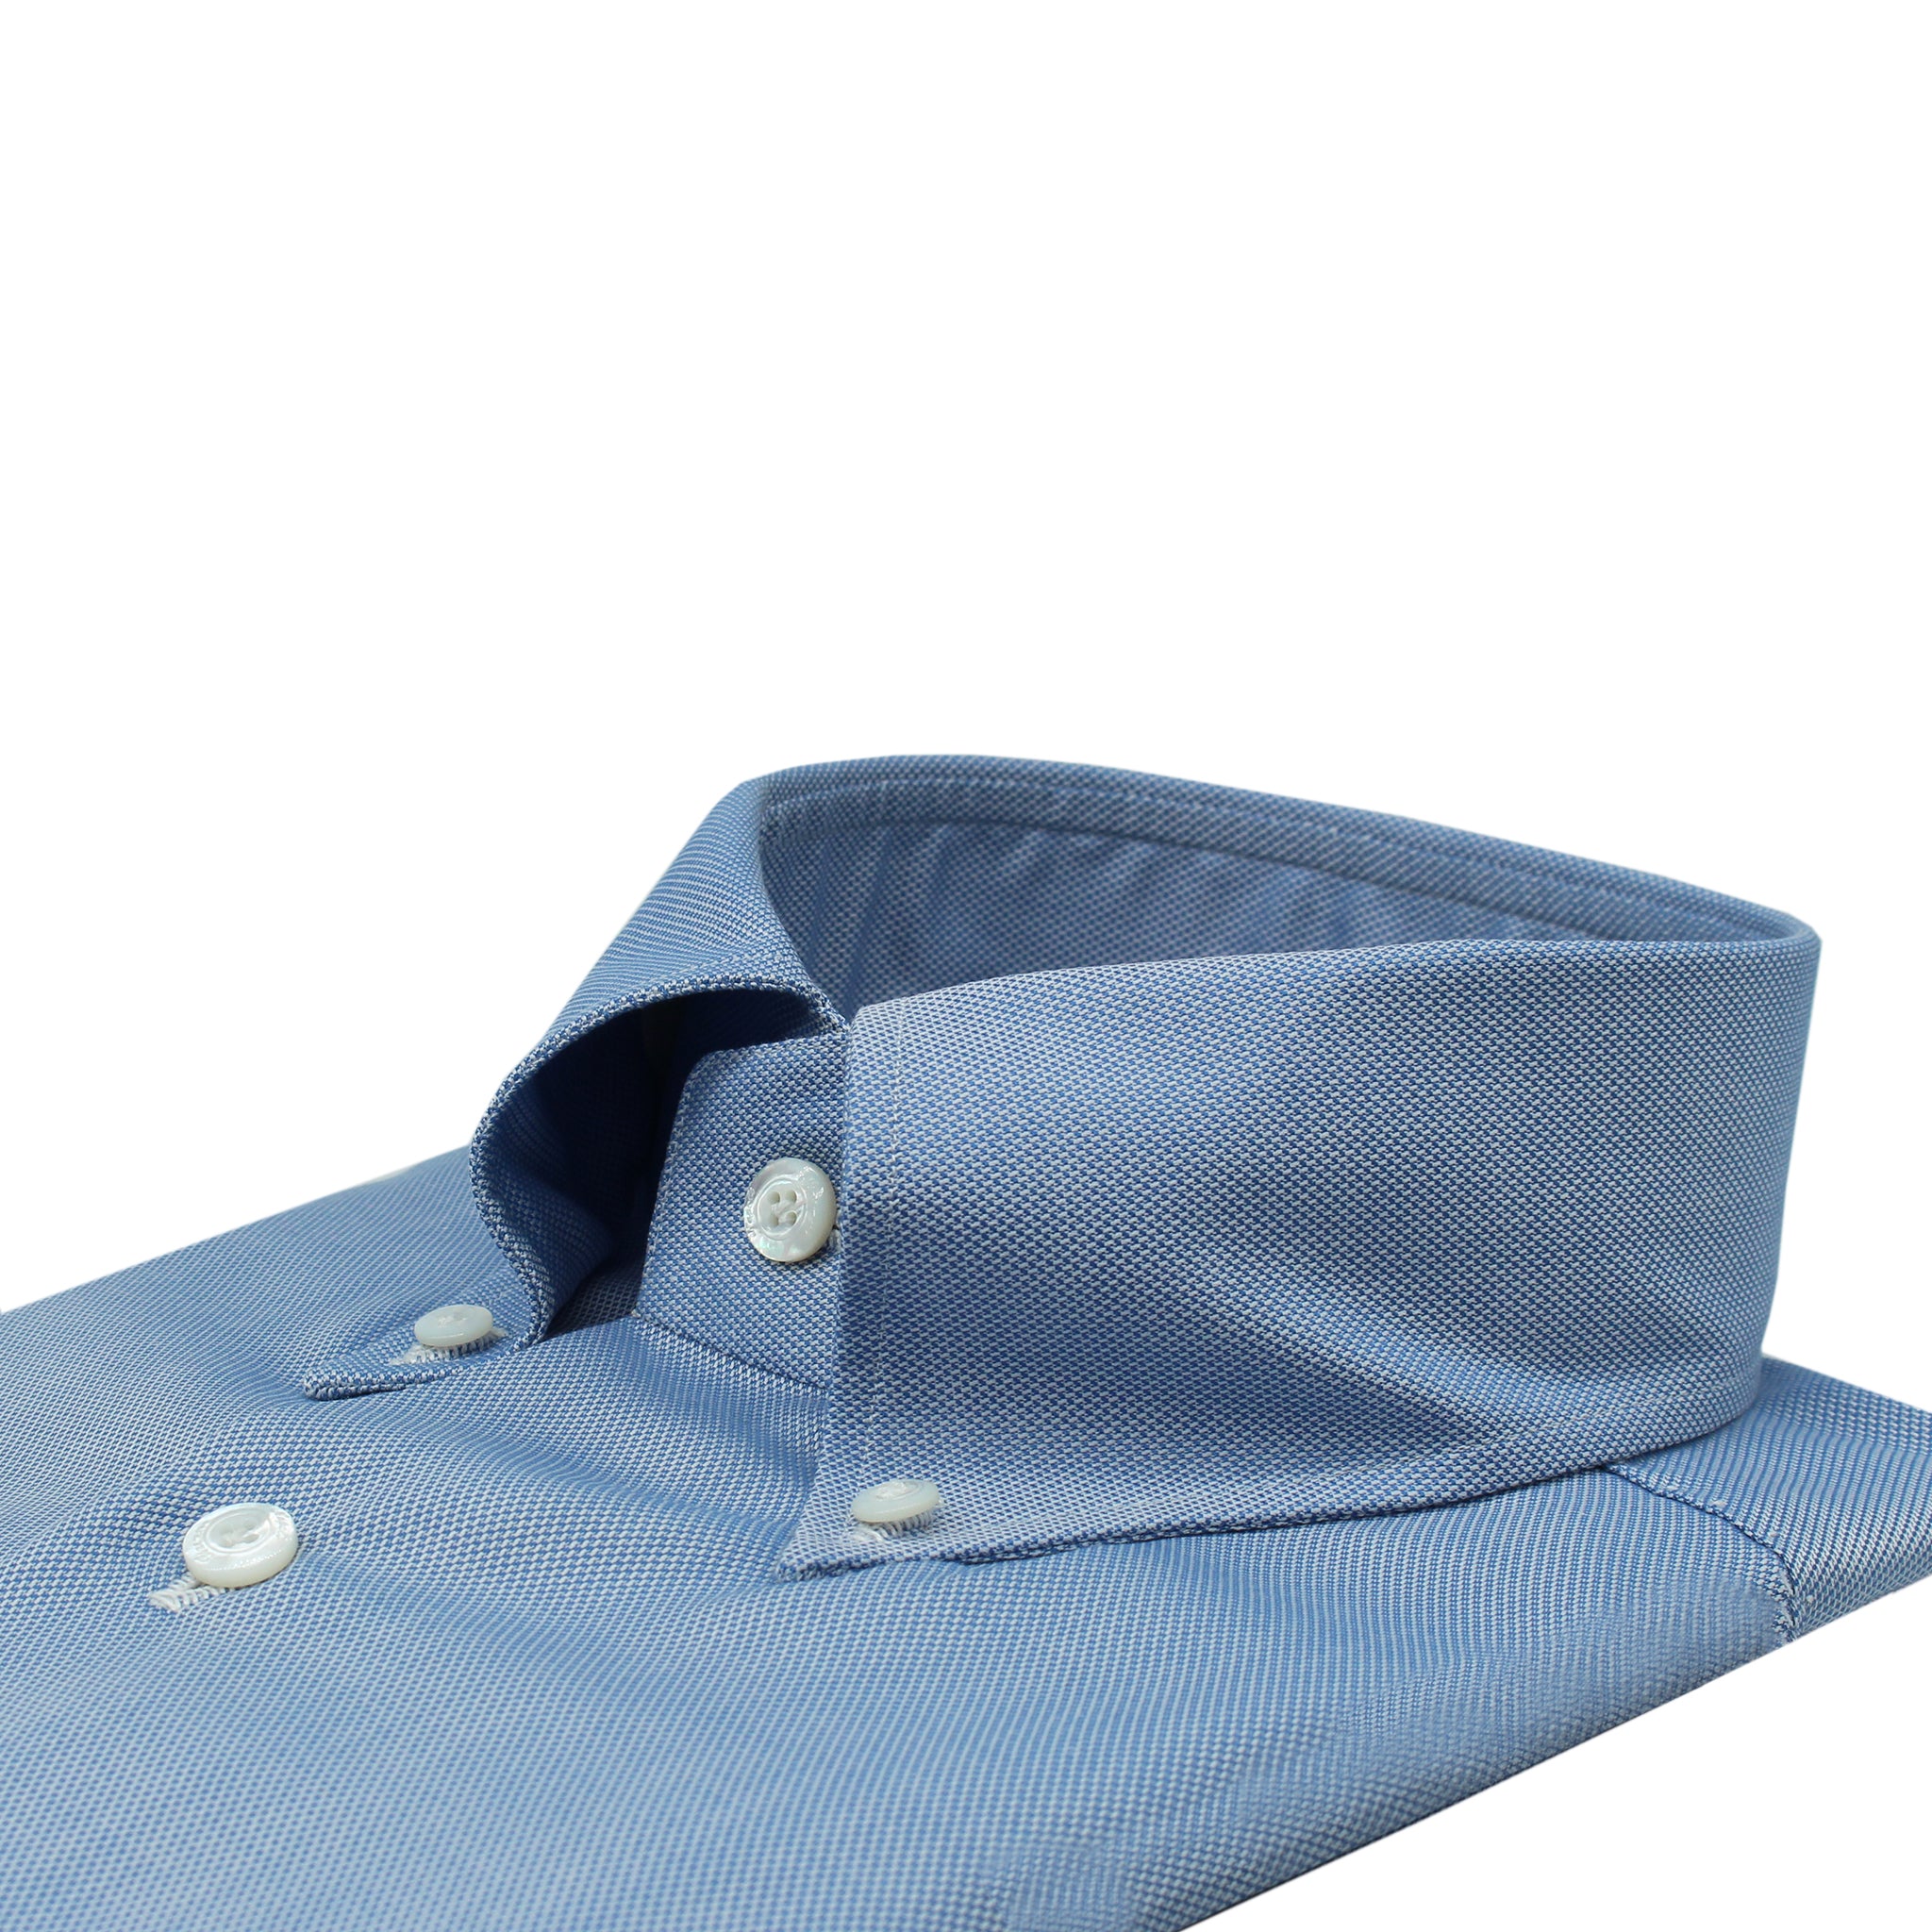 Camicia classica Napoli regular fit, cotone oxford blu, collo button down